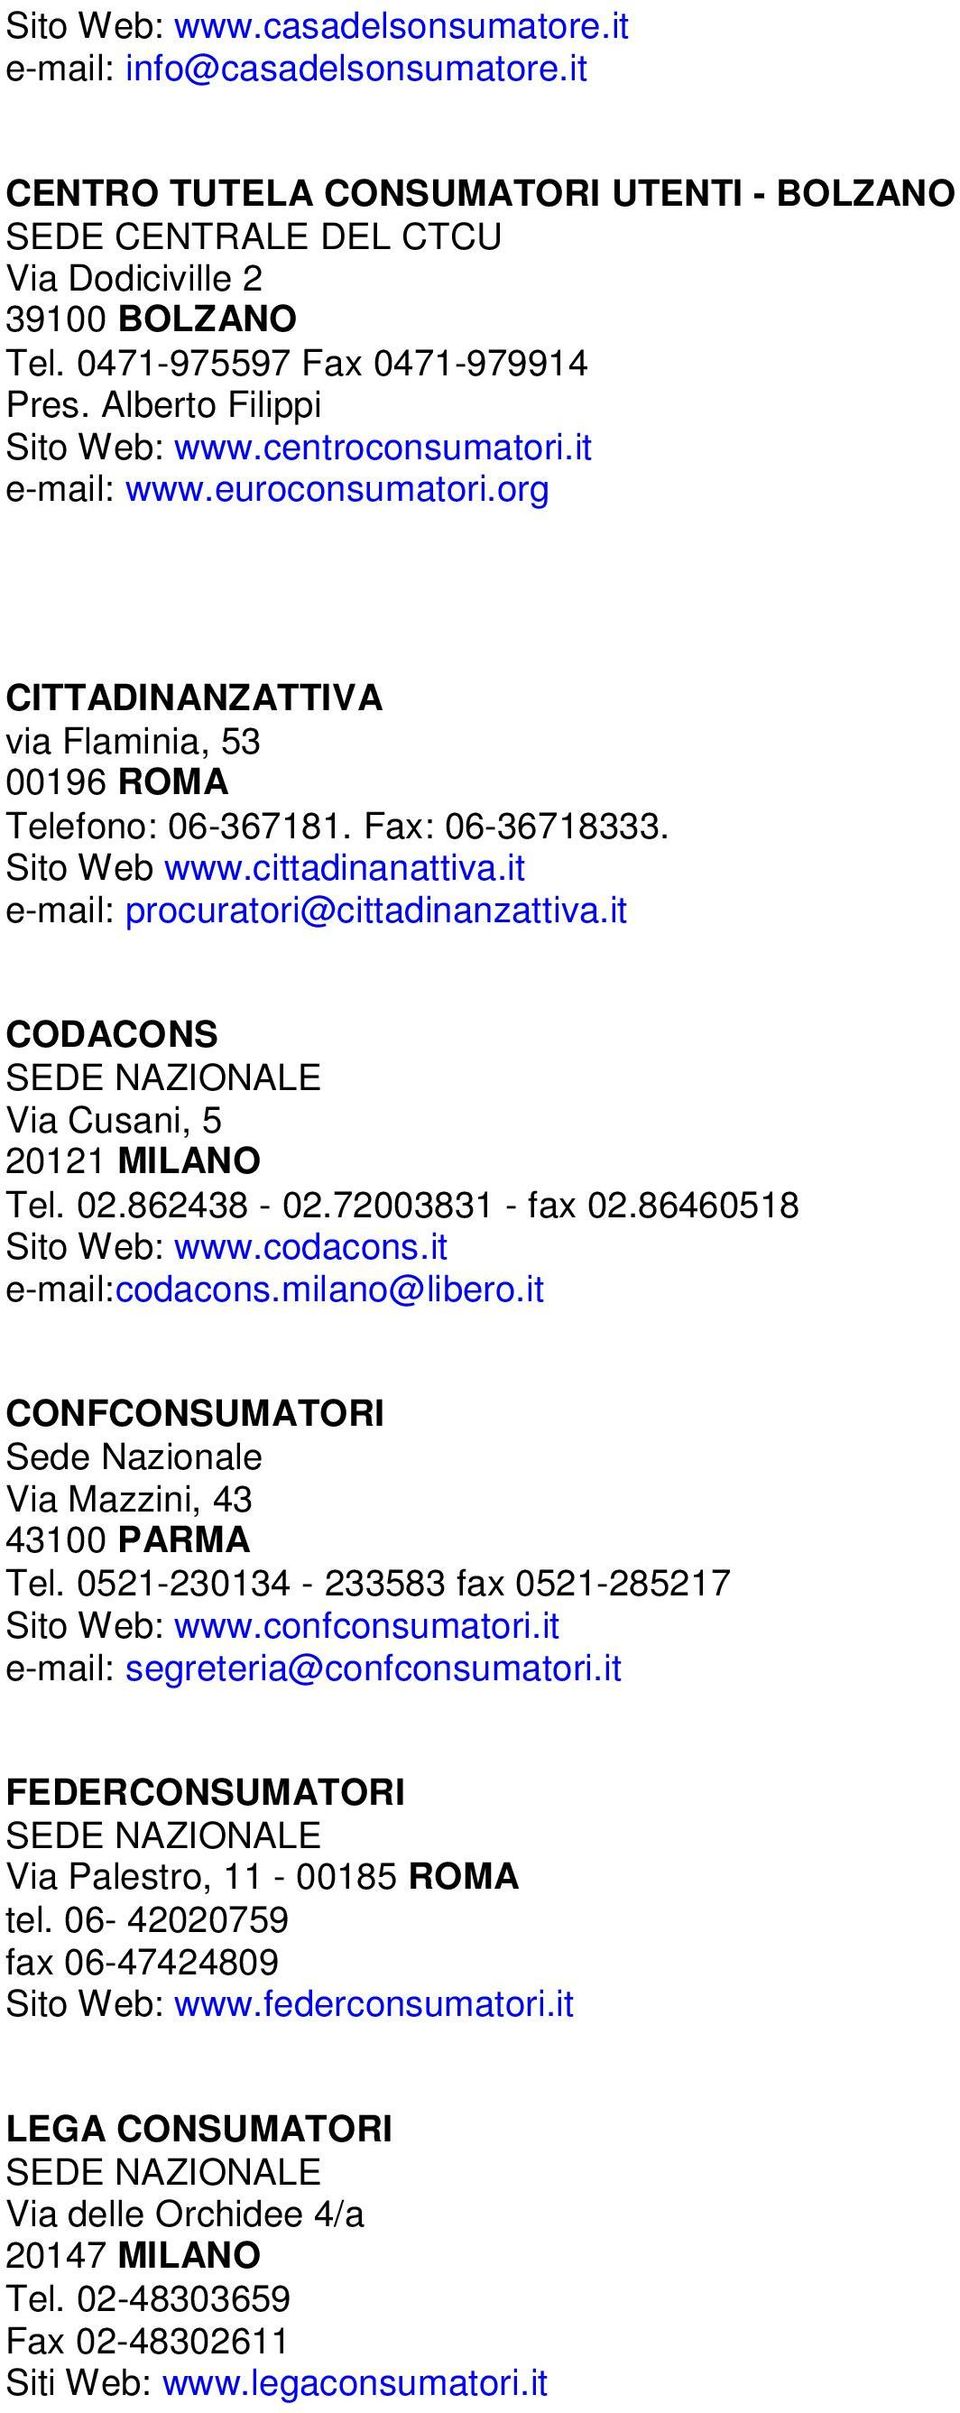 Fax: 06-36718333. Sito Web www.cittadinanattiva.it e-mail: procuratori@cittadinanzattiva.it CODACONS Via Cusani, 5 20121 MILANO Tel. 02.862438-02.72003831 - fax 02.86460518 Sito Web: www.codacons.